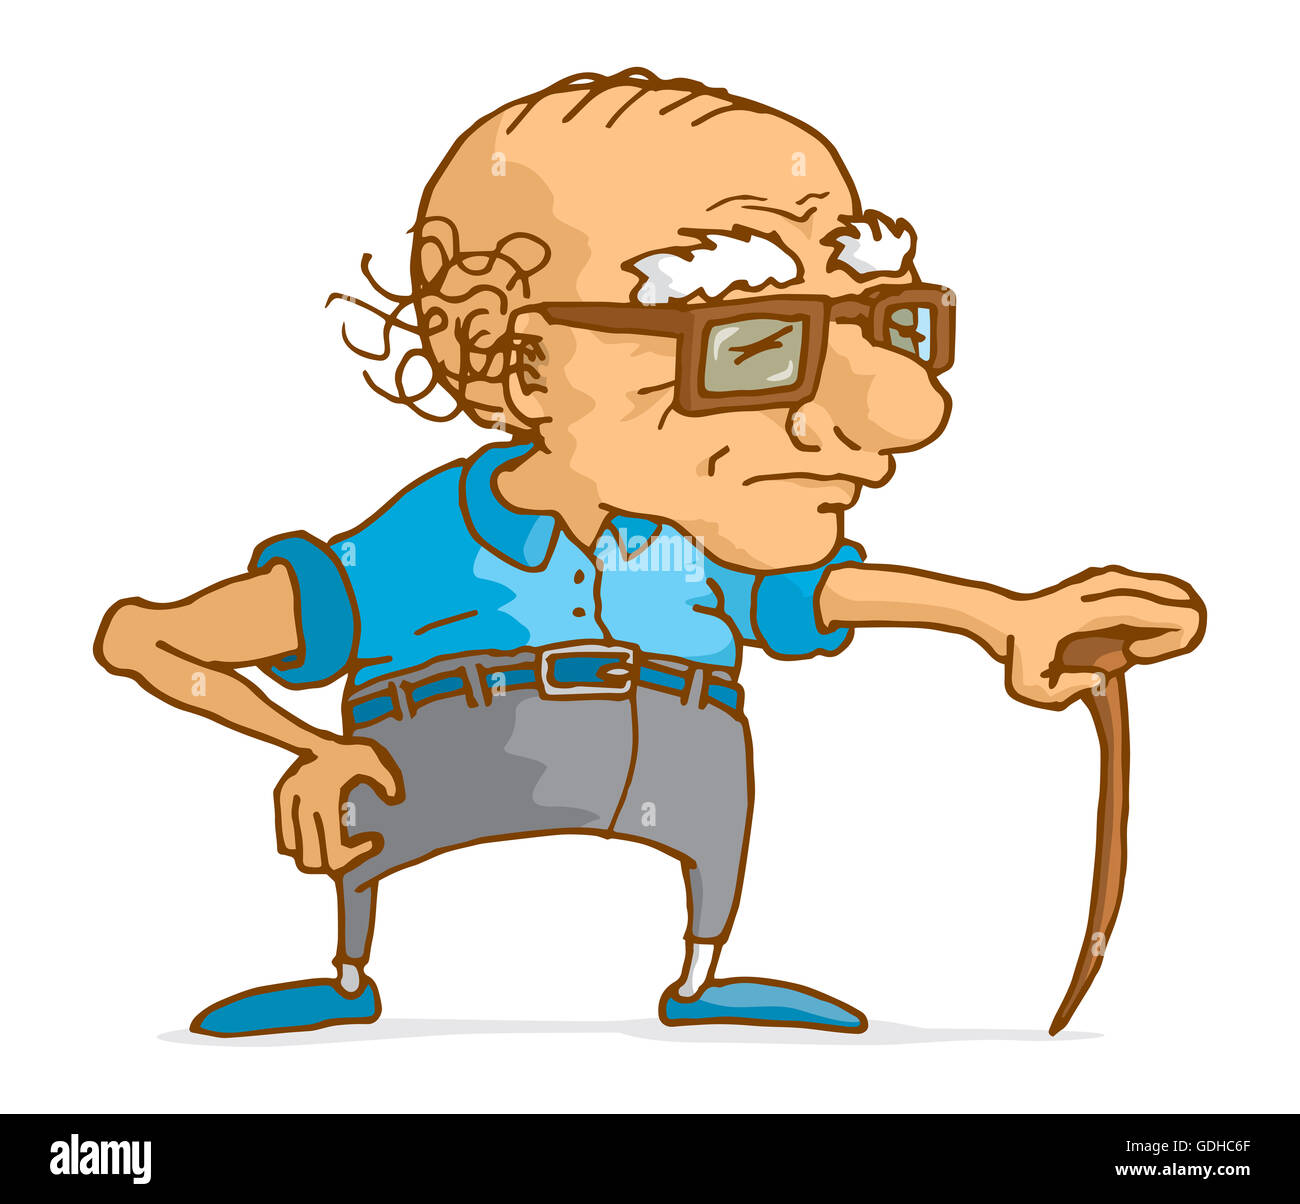 Cartoon illustration of senior man leaning on wood cane Stock Photo